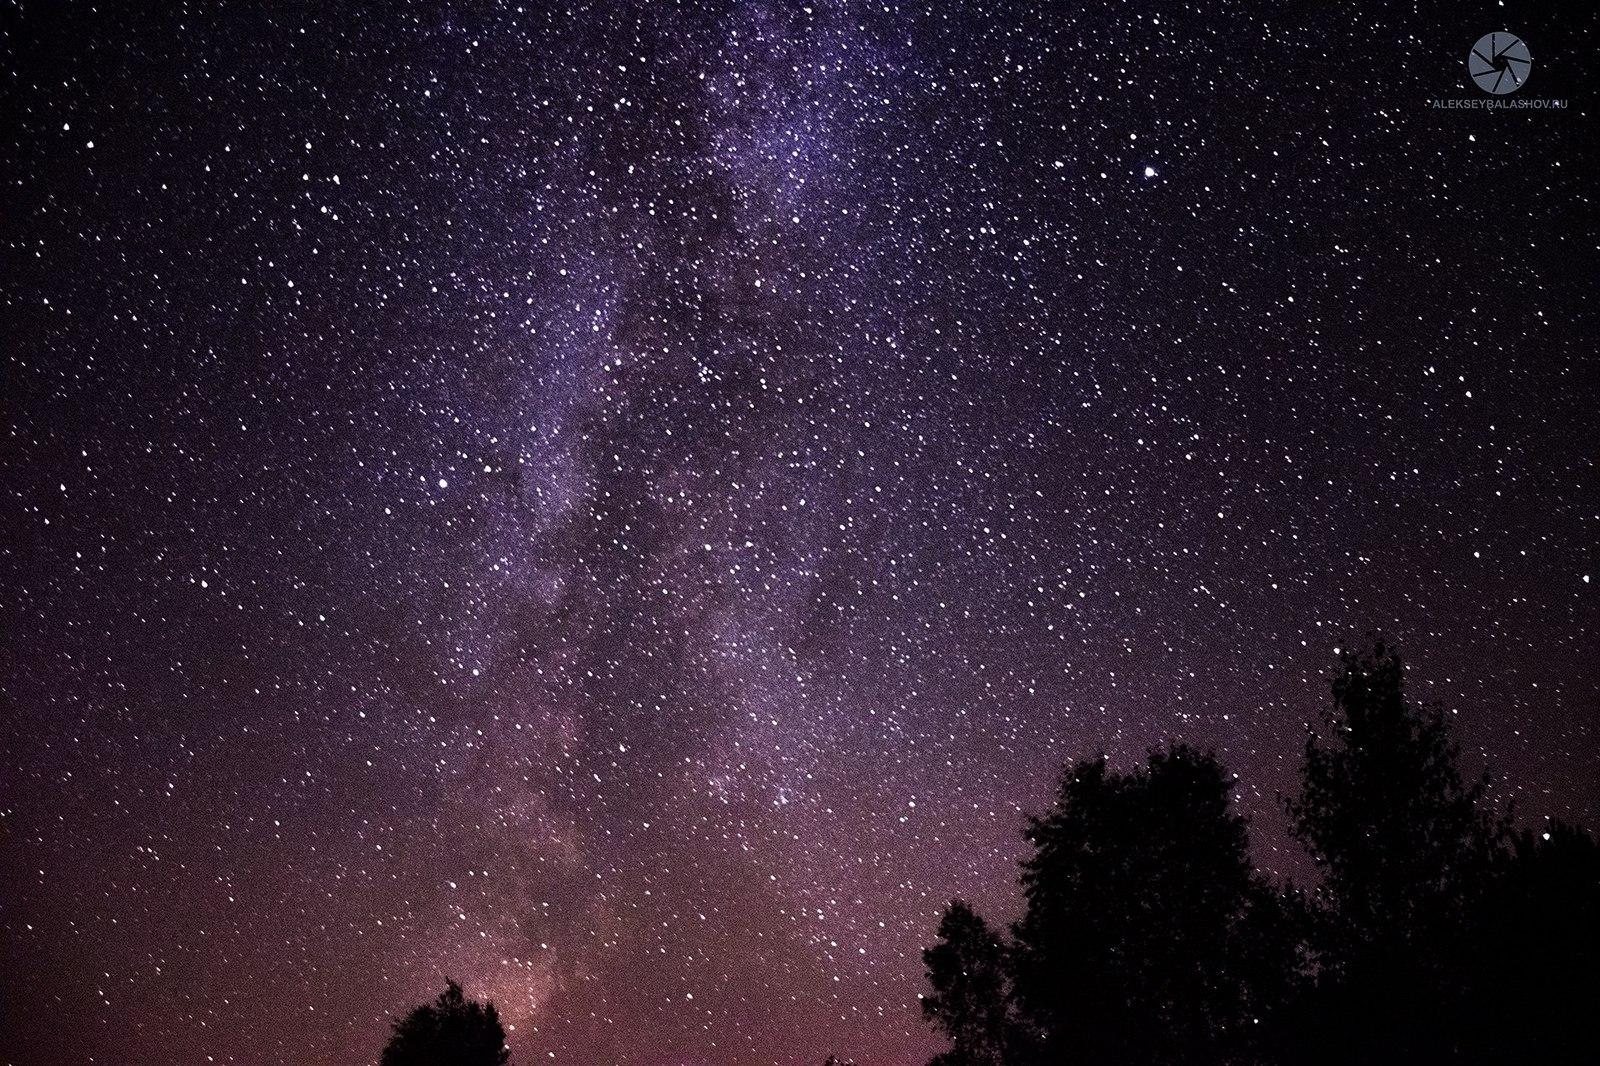 картинки : гора, звезда, атмосфера, ночное небо, Северное сияние, лунный  свет, Звездный, Астрономия, Горы, звездное небо, звездная ночь, Звезды  ночного неба, astronomical object, Геологическое явление 3800x2533 - -  657504 - красивые картинки - PxHere